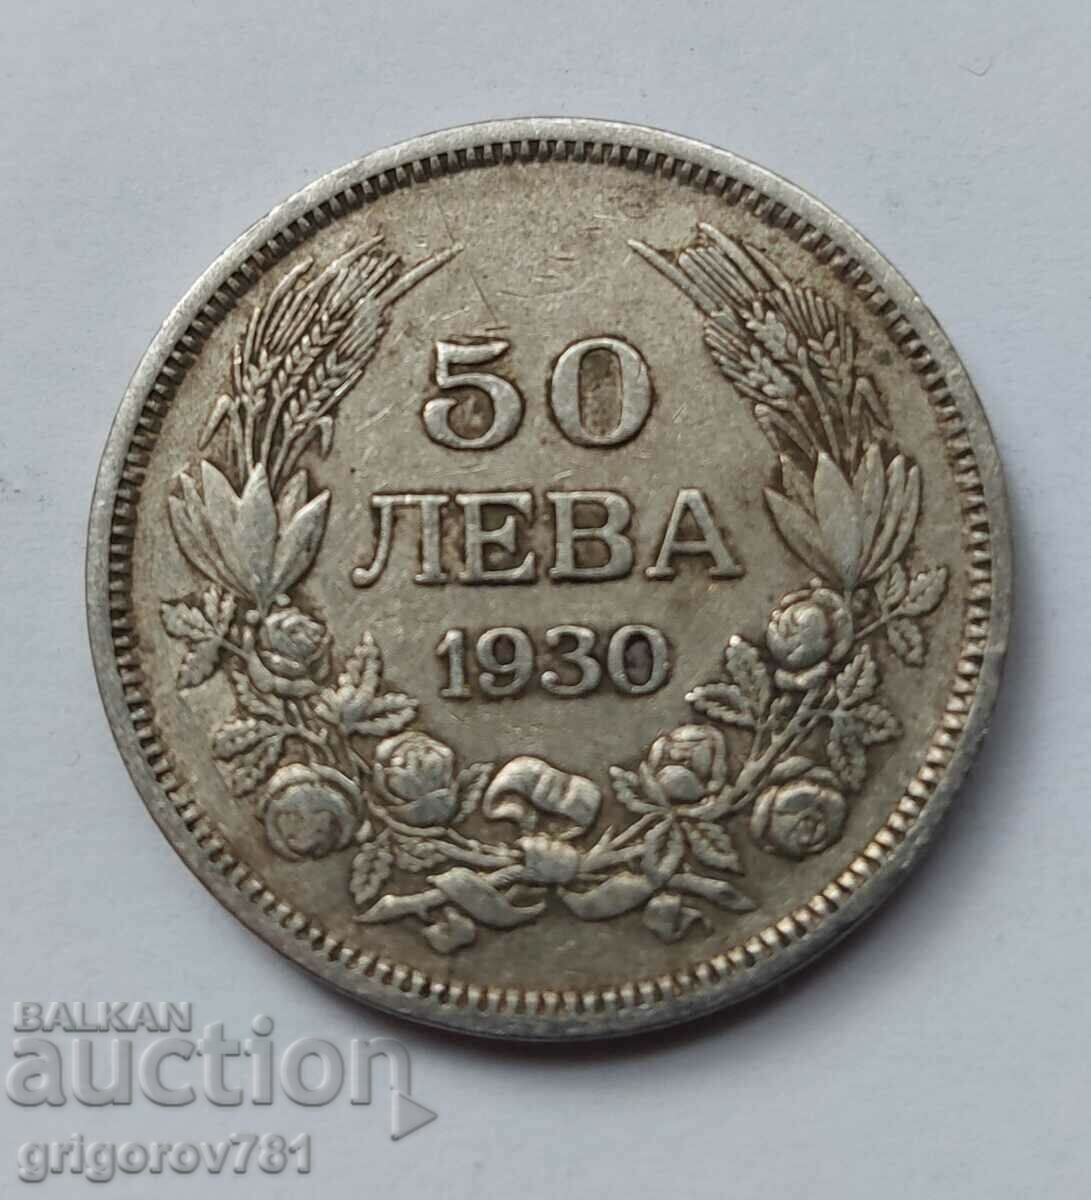 50 leva argint Bulgaria 1930 - monedă de argint #59